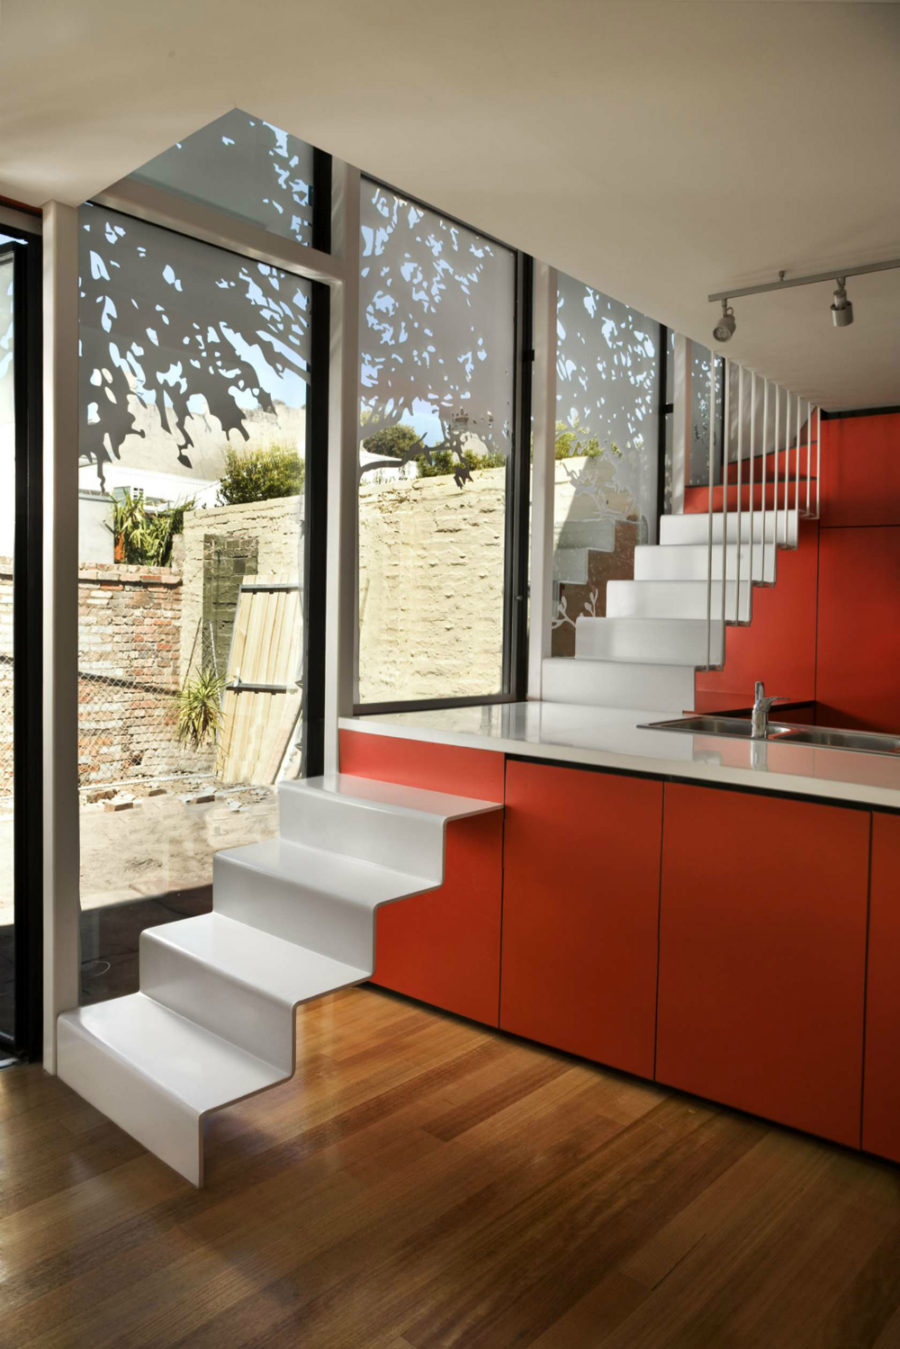 Современные тенденции в дизайне кухни в вашем доме - лестница проходит через кухонный остров